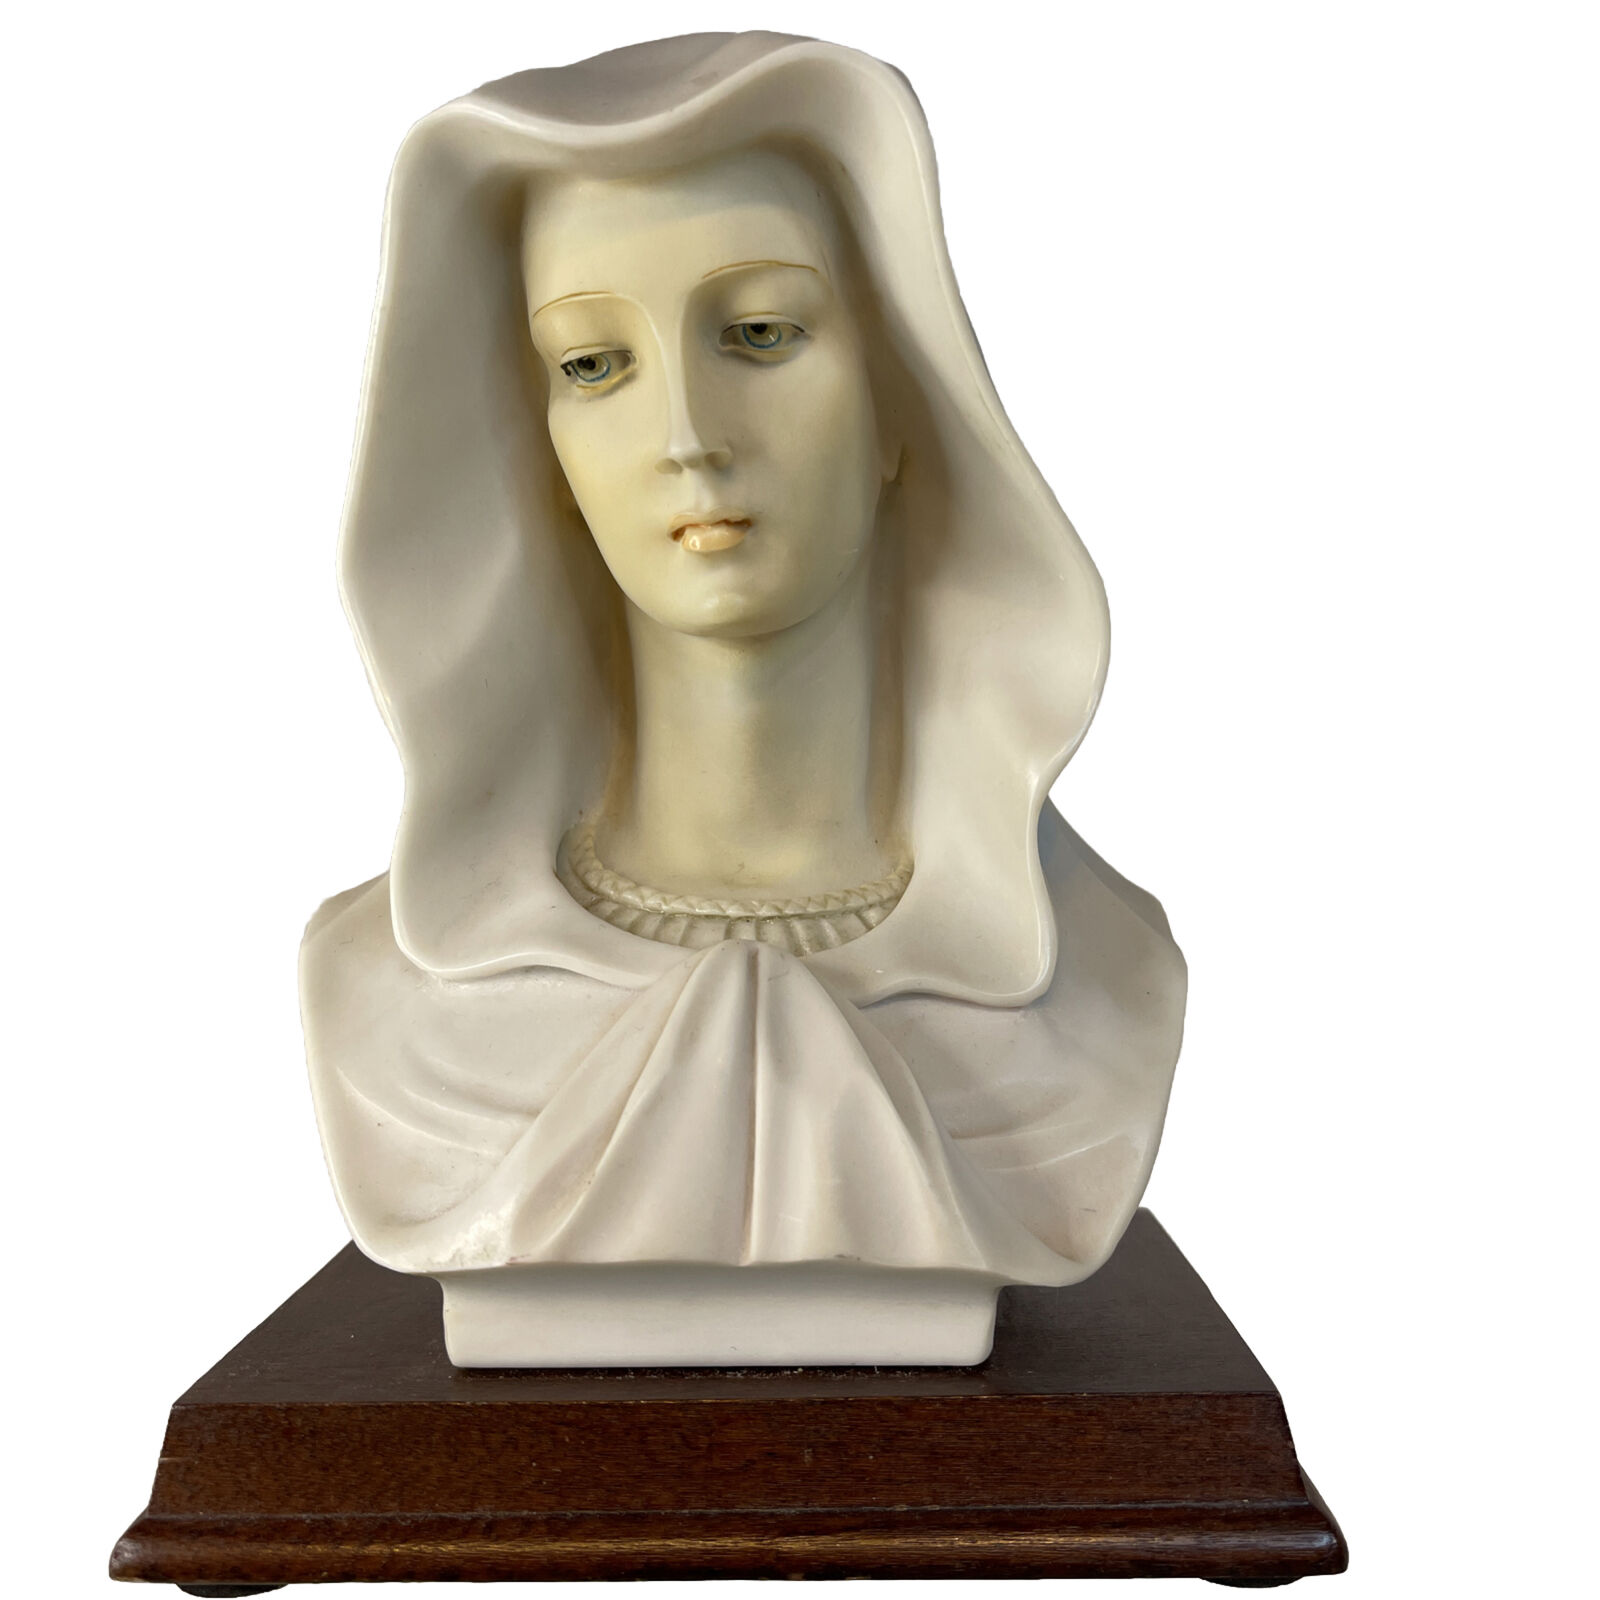 Veiled Madonna Virgin Mary Bust Sculpture 1986 Alabaster Composite 7” Vintage